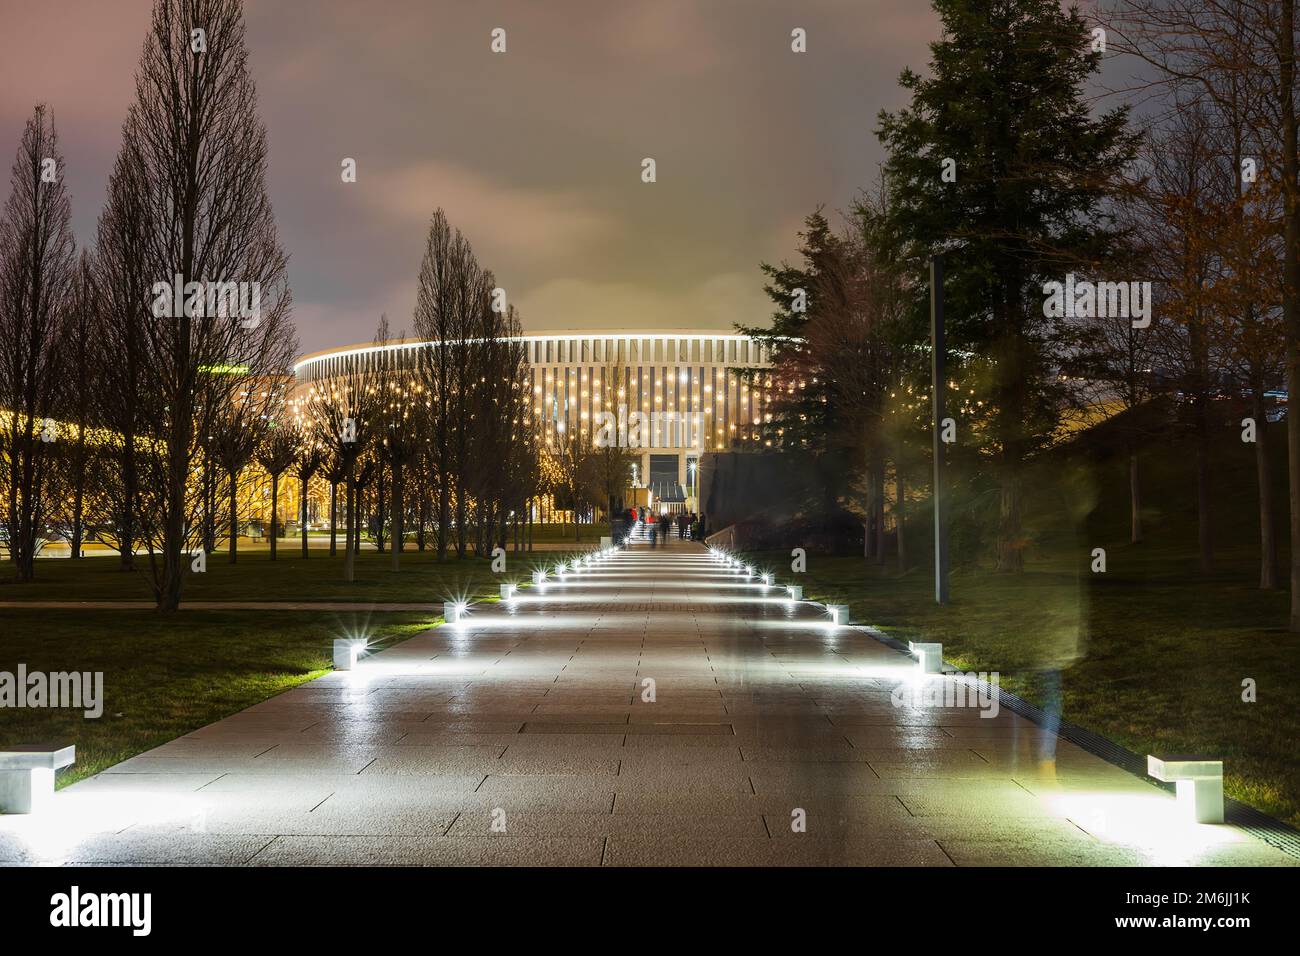 Abendpark mit einem beleuchteten Fußgängerweg, der zu einem halbrunden, großen, leuchtenden Gebäude führt. Stockfoto